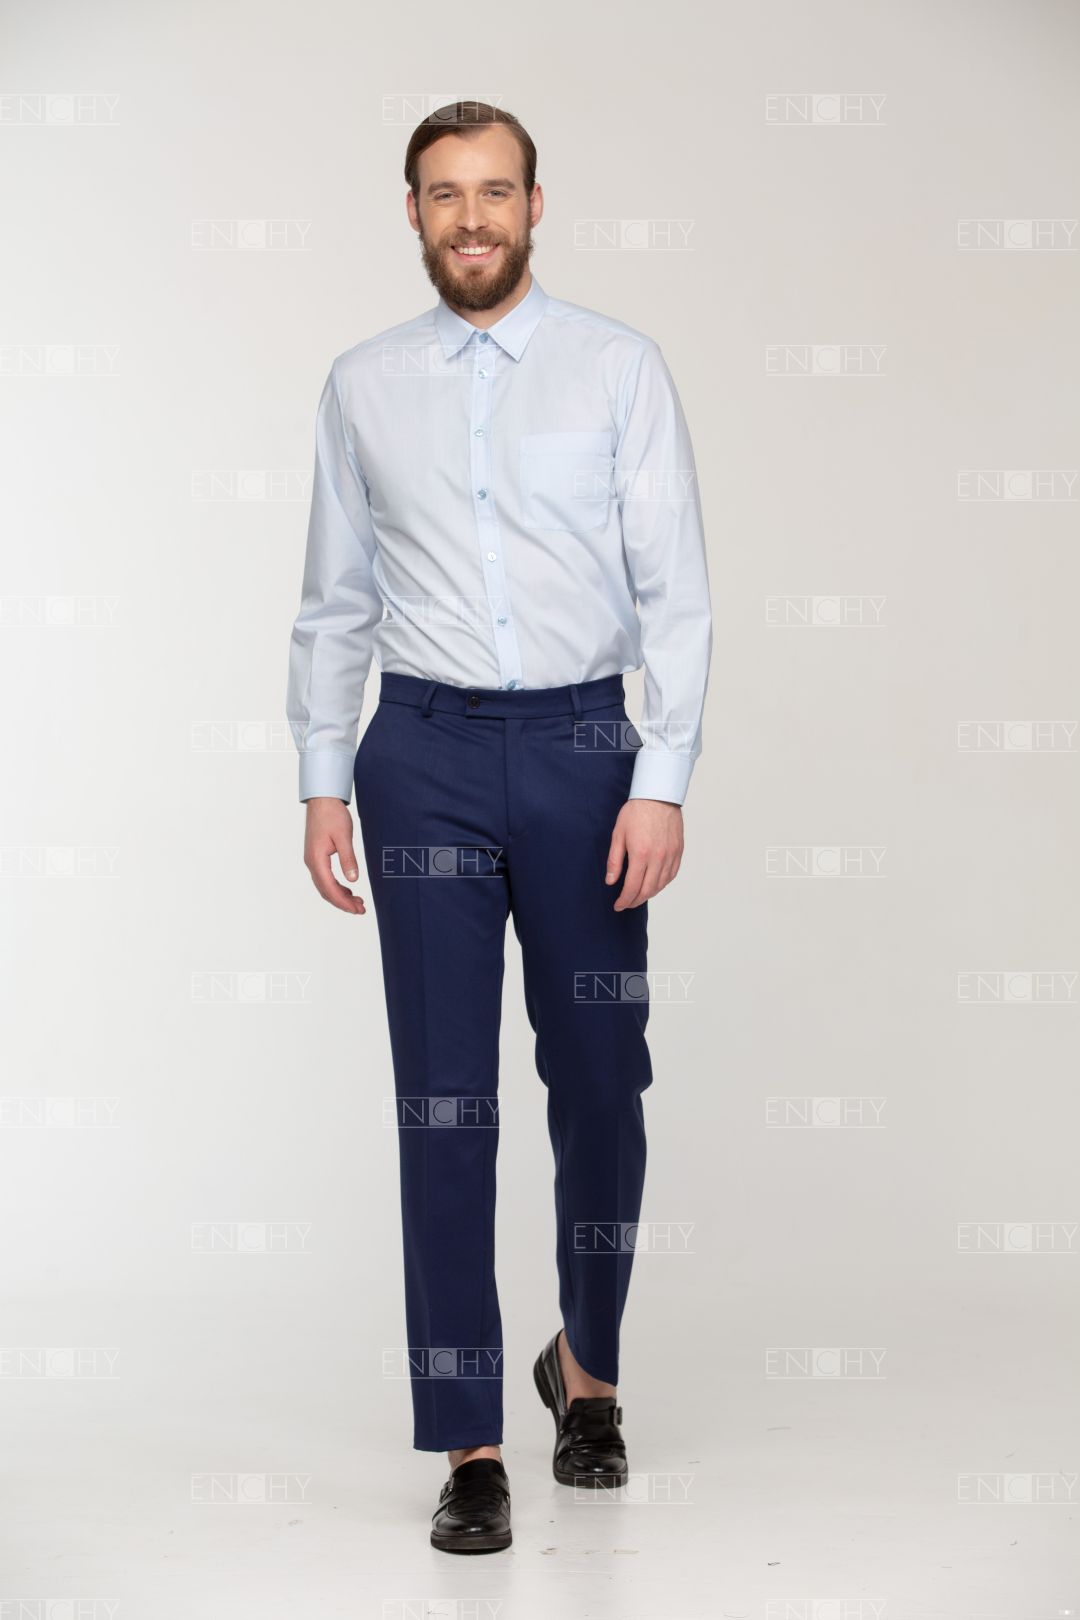 Как правильно носить мужские брюки: образы и модные сочетания по цветам ифасонам